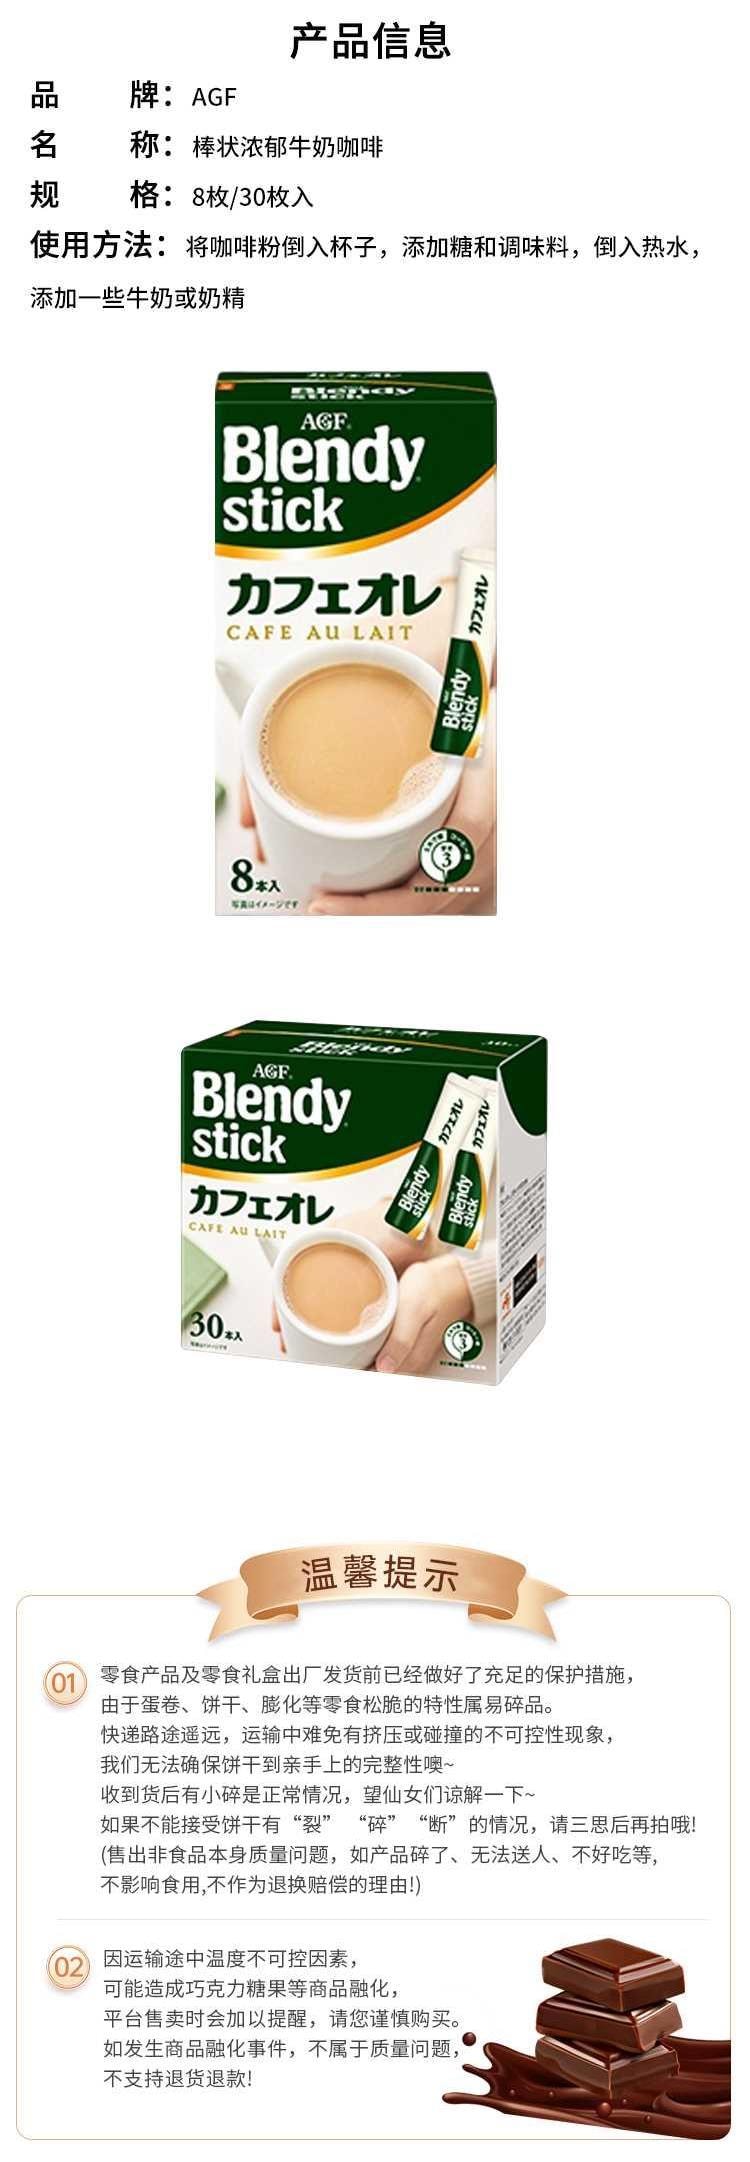 【日本直邮】AGF blendy stick 原味拿铁速溶咖啡 27枚